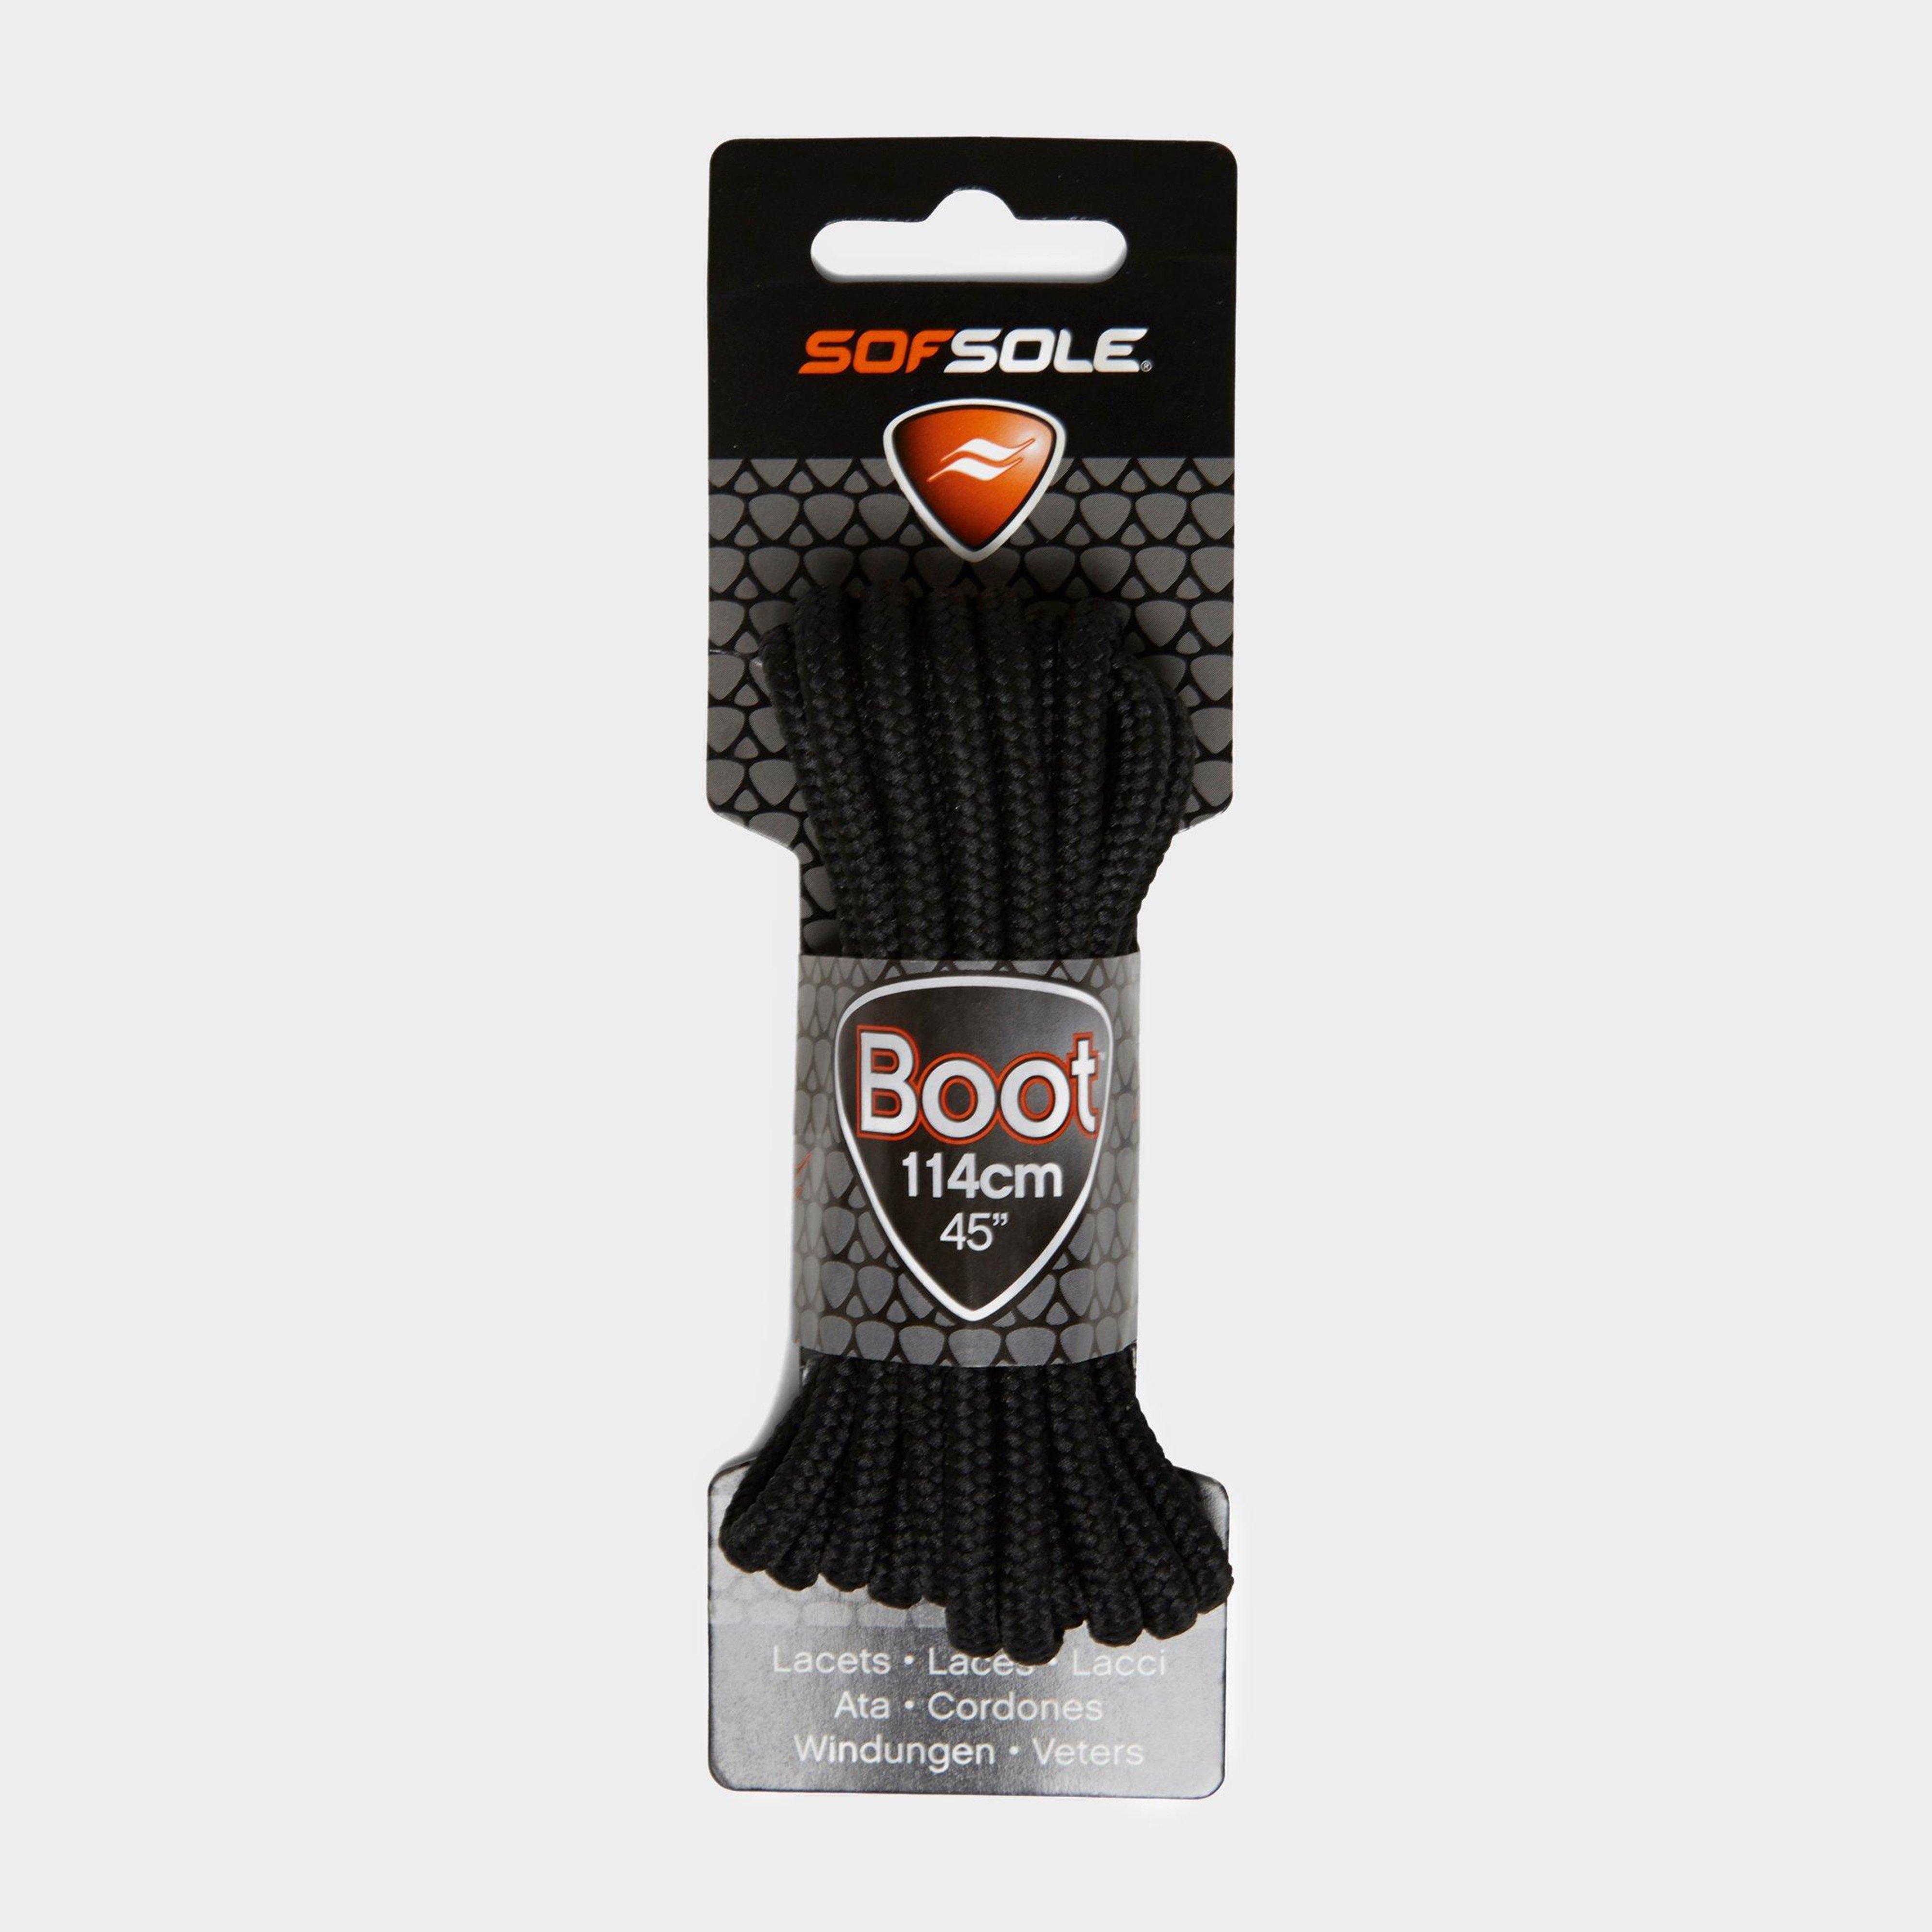 Sof Sole Wax Boot Laces - 114cm - Black/blk  Black/blk